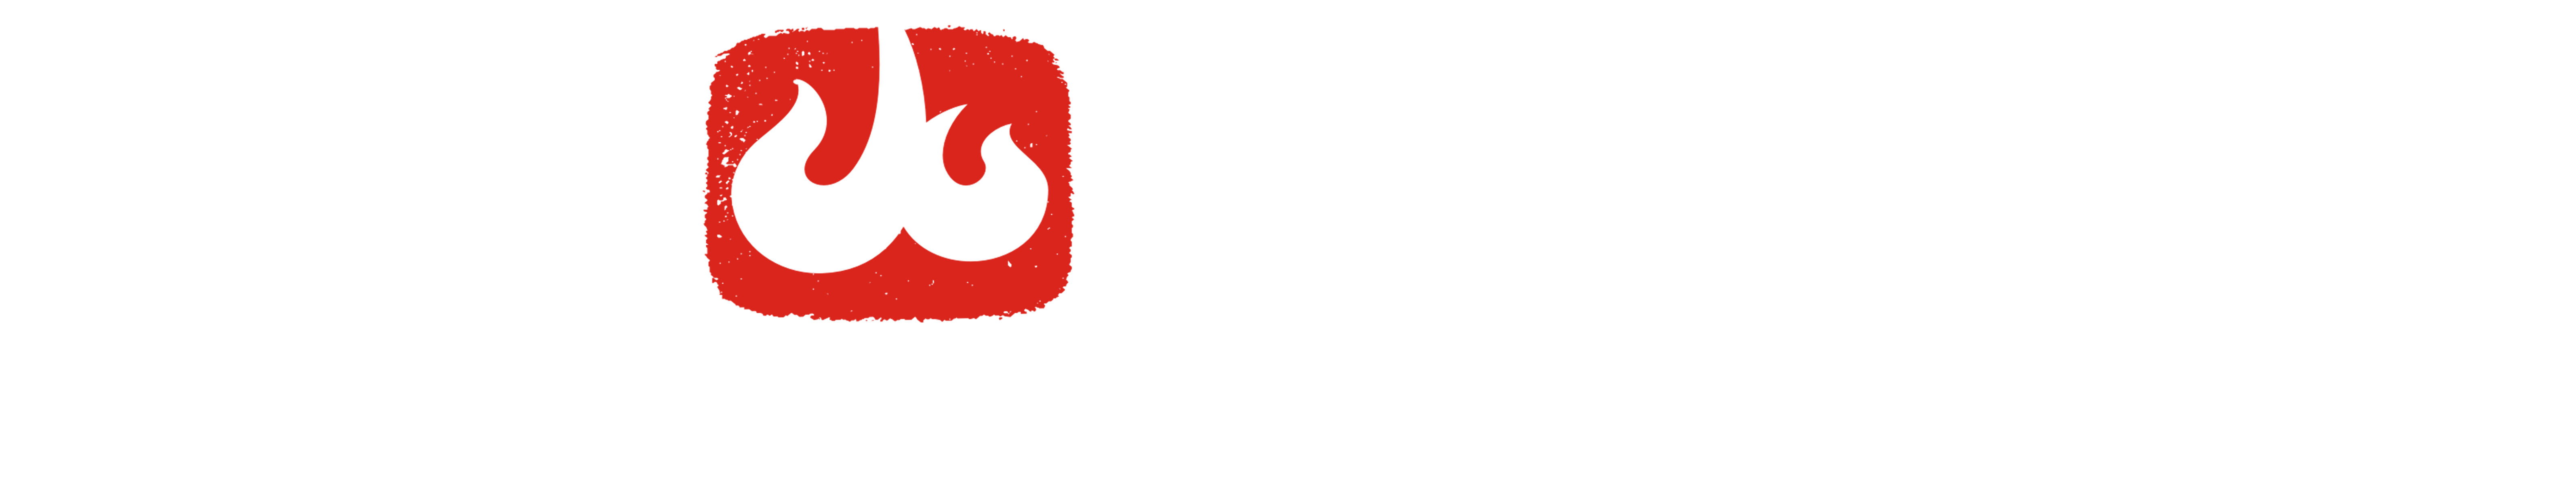 龙泉剑村刀剑研究院官方网站